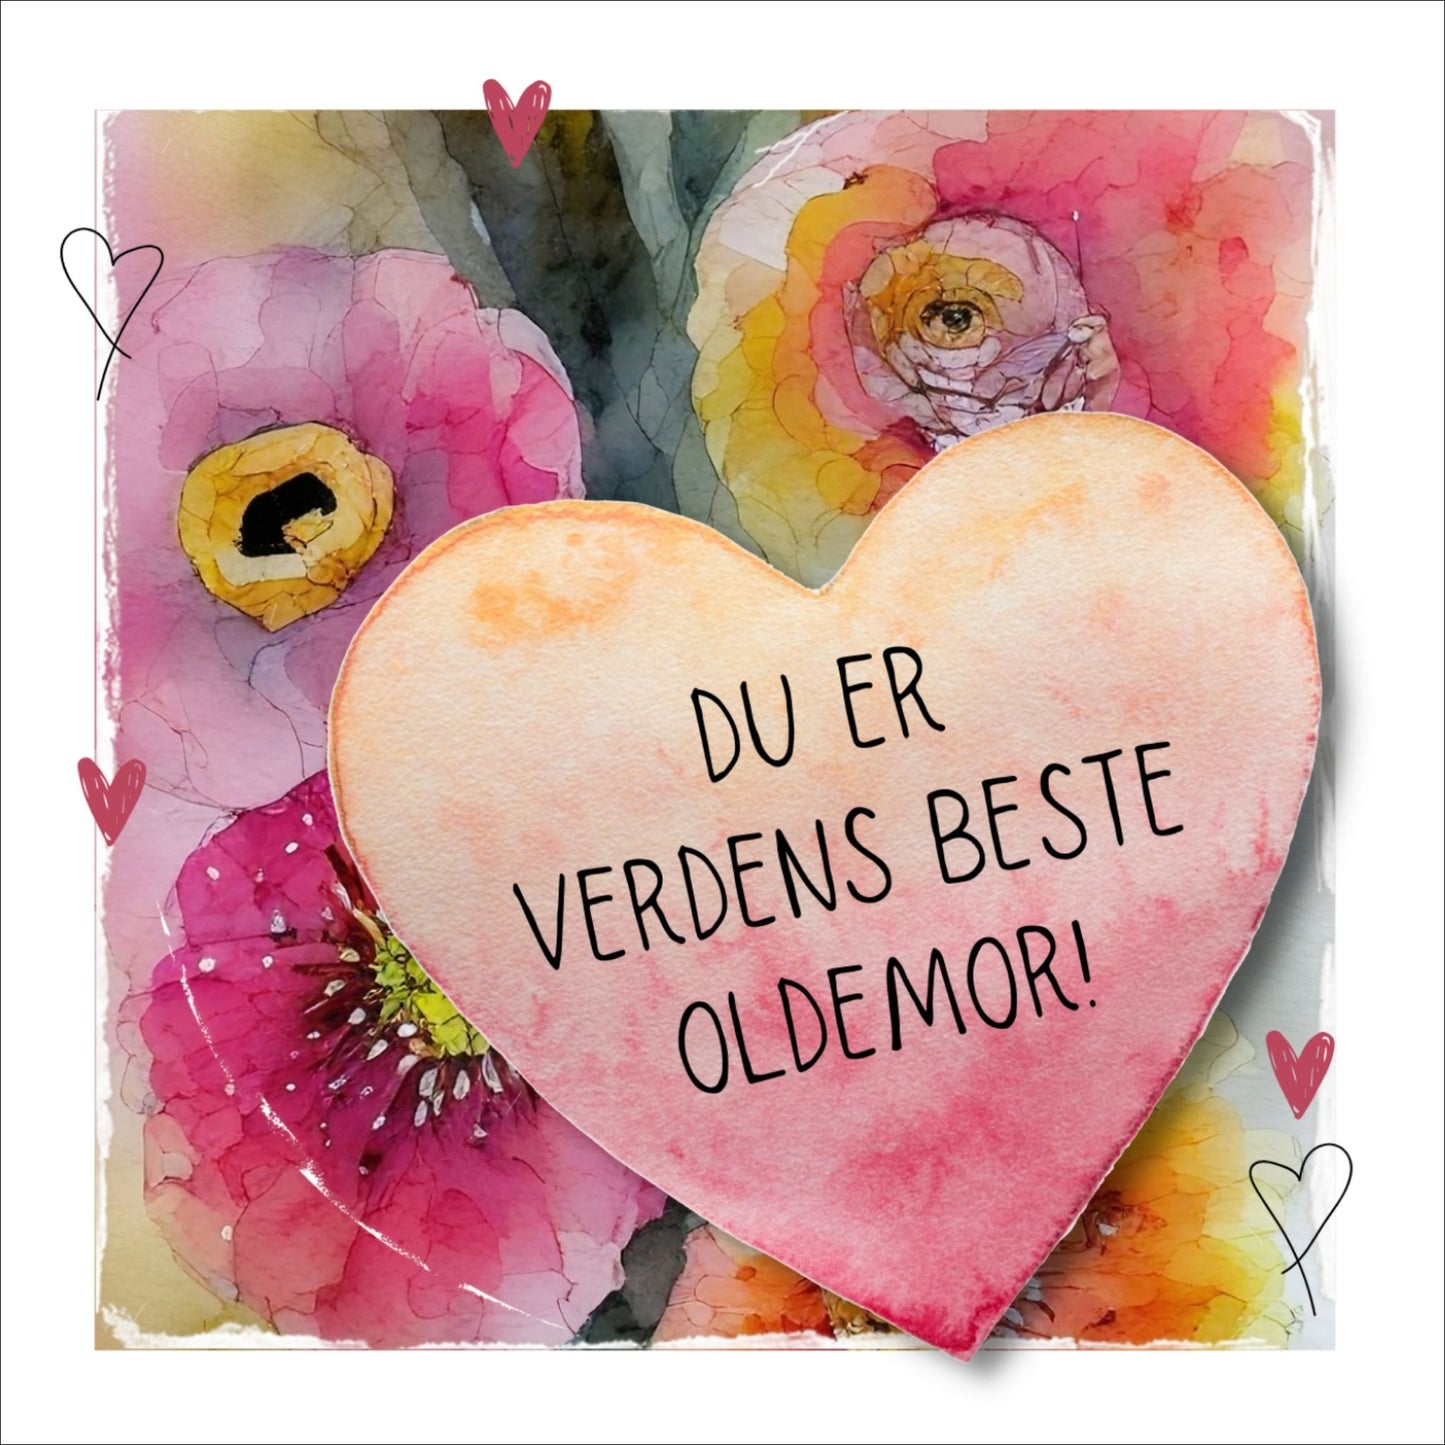 Grafisk plakat med et rosa hjerte påført tekst "Du er verdens beste oldermor". Bagrunn i cerise og guloransje blomster. Kortet har en hvit kant rundt på 1,5 cm.